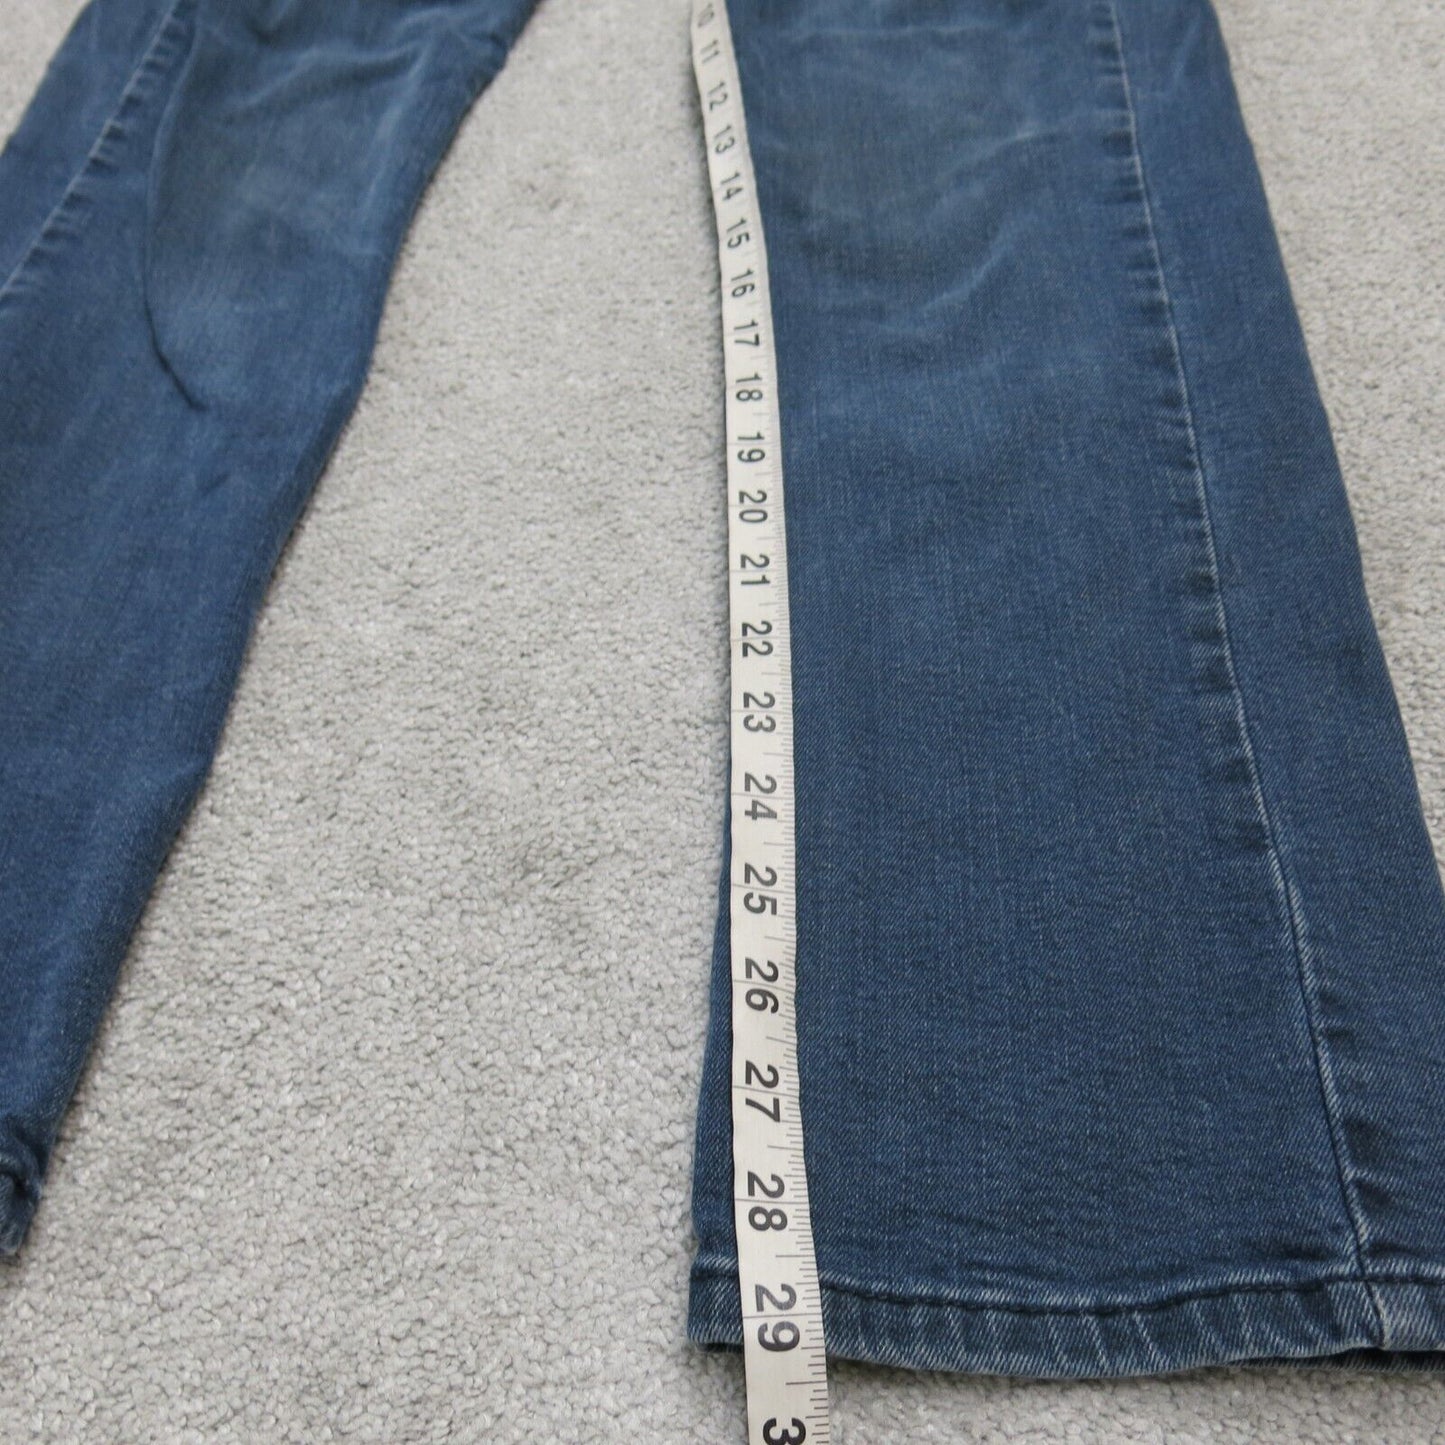 Levis 514 Mens Slim Straight Leg Jeans Low Rise Flat Front Blue Size W29xL32